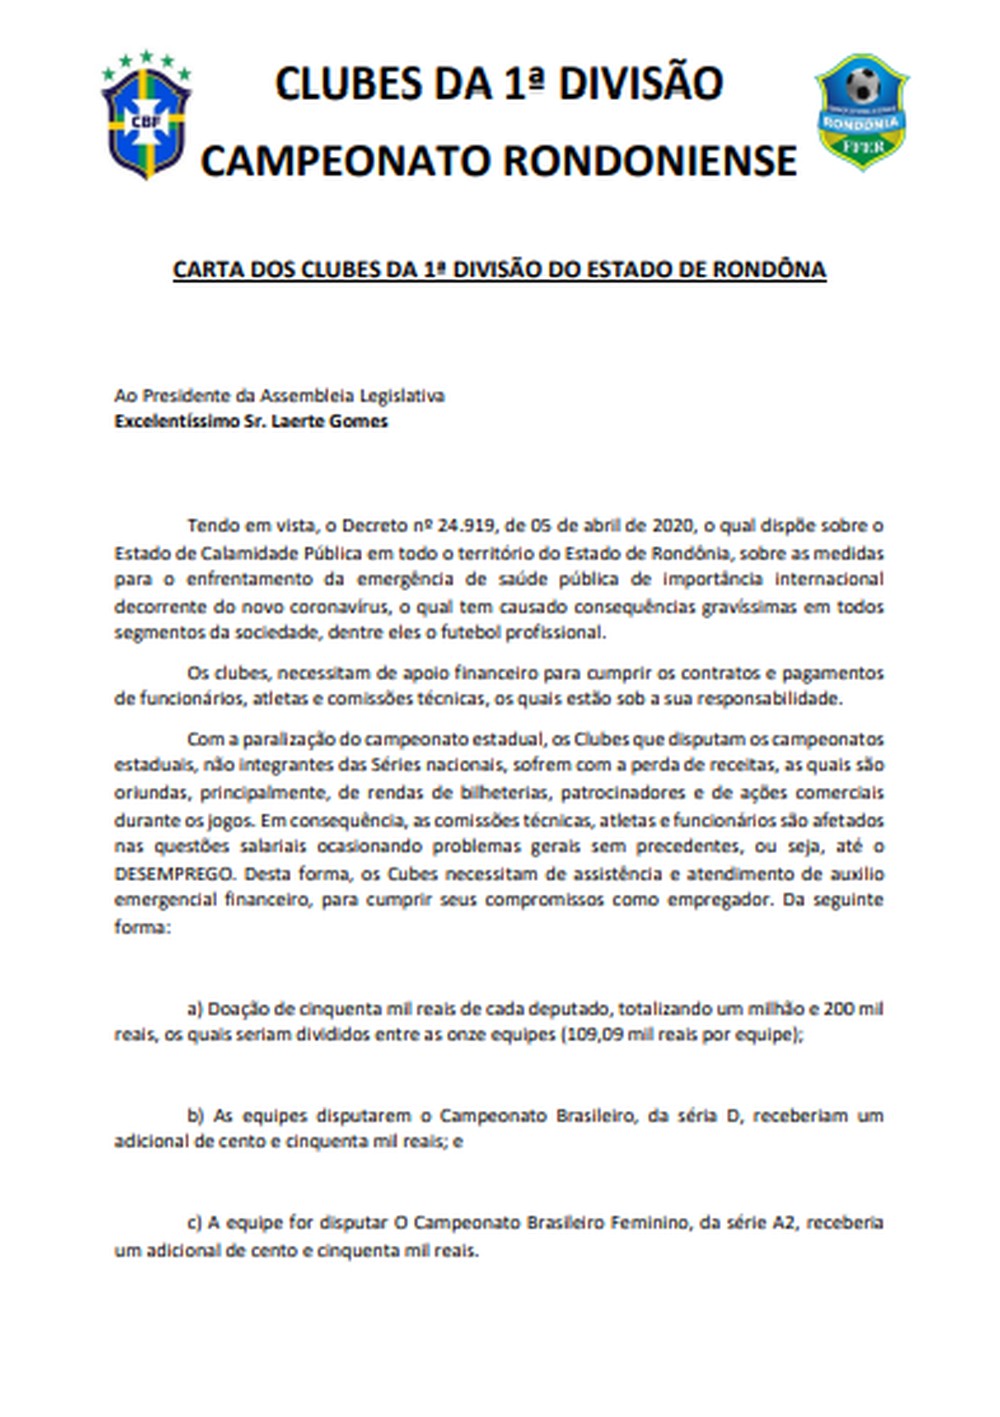 Pedido de auxílio financeiro ao Governo de Rondônia e à Assembleia Legeslativa (Foto: Divulgação )